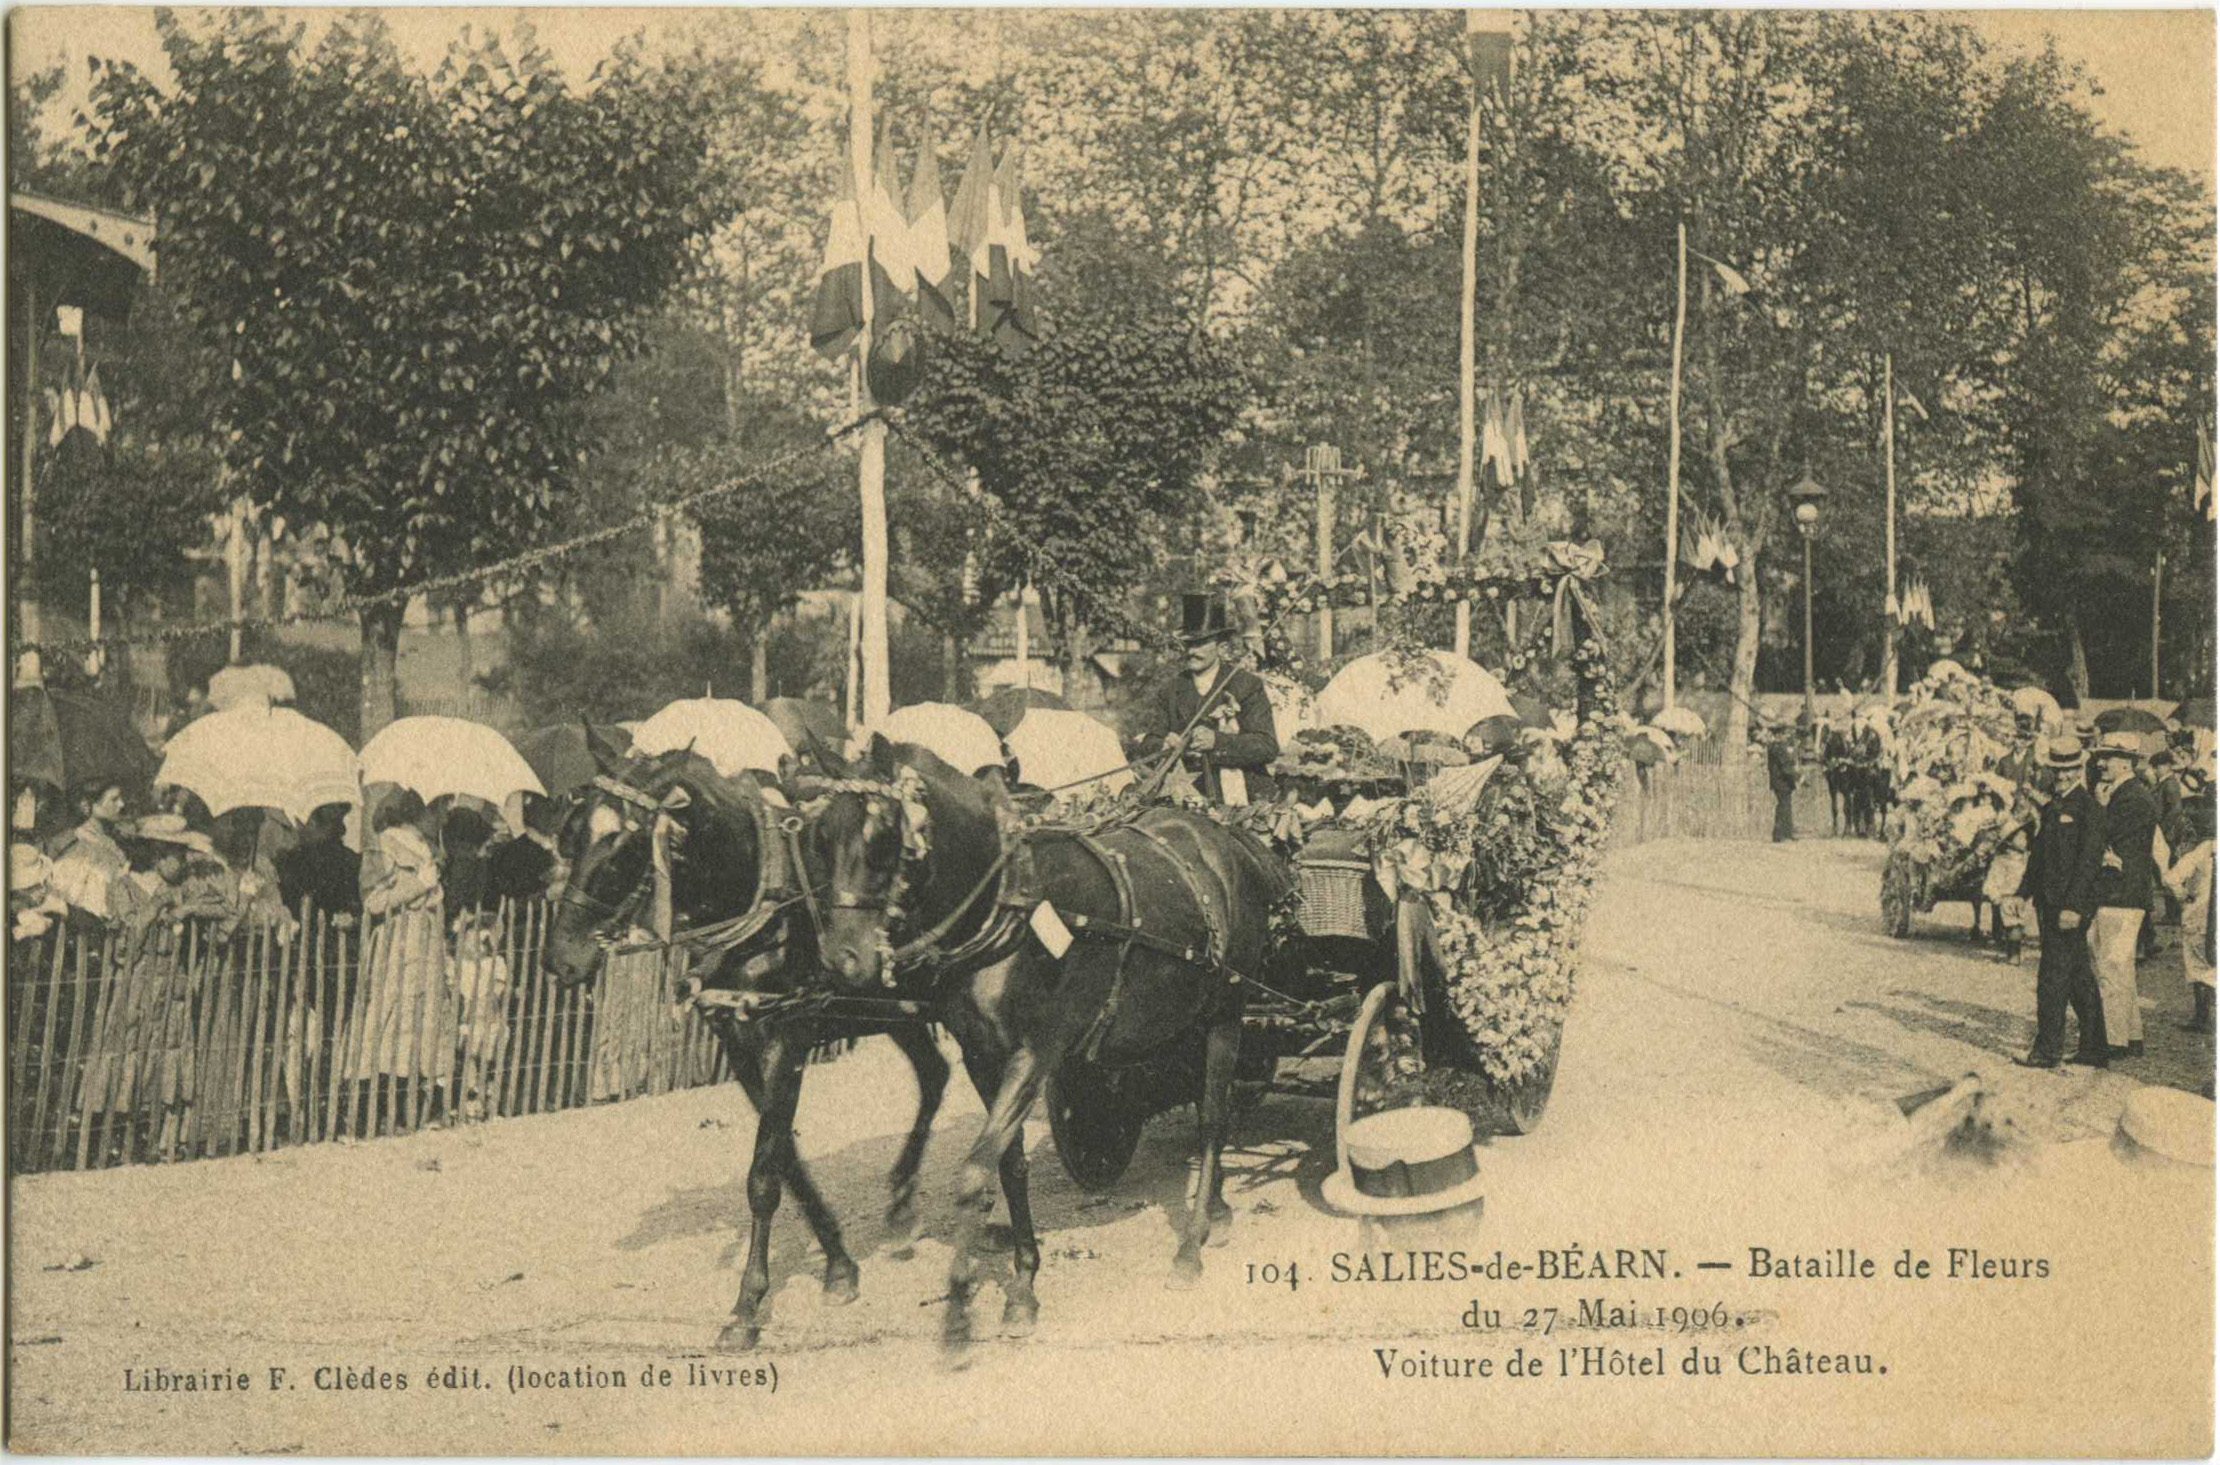 Salies-de-Béarn - Bataille de Fleurs du 27 Mai 1906. Voiture de l'Hôtel du Château.